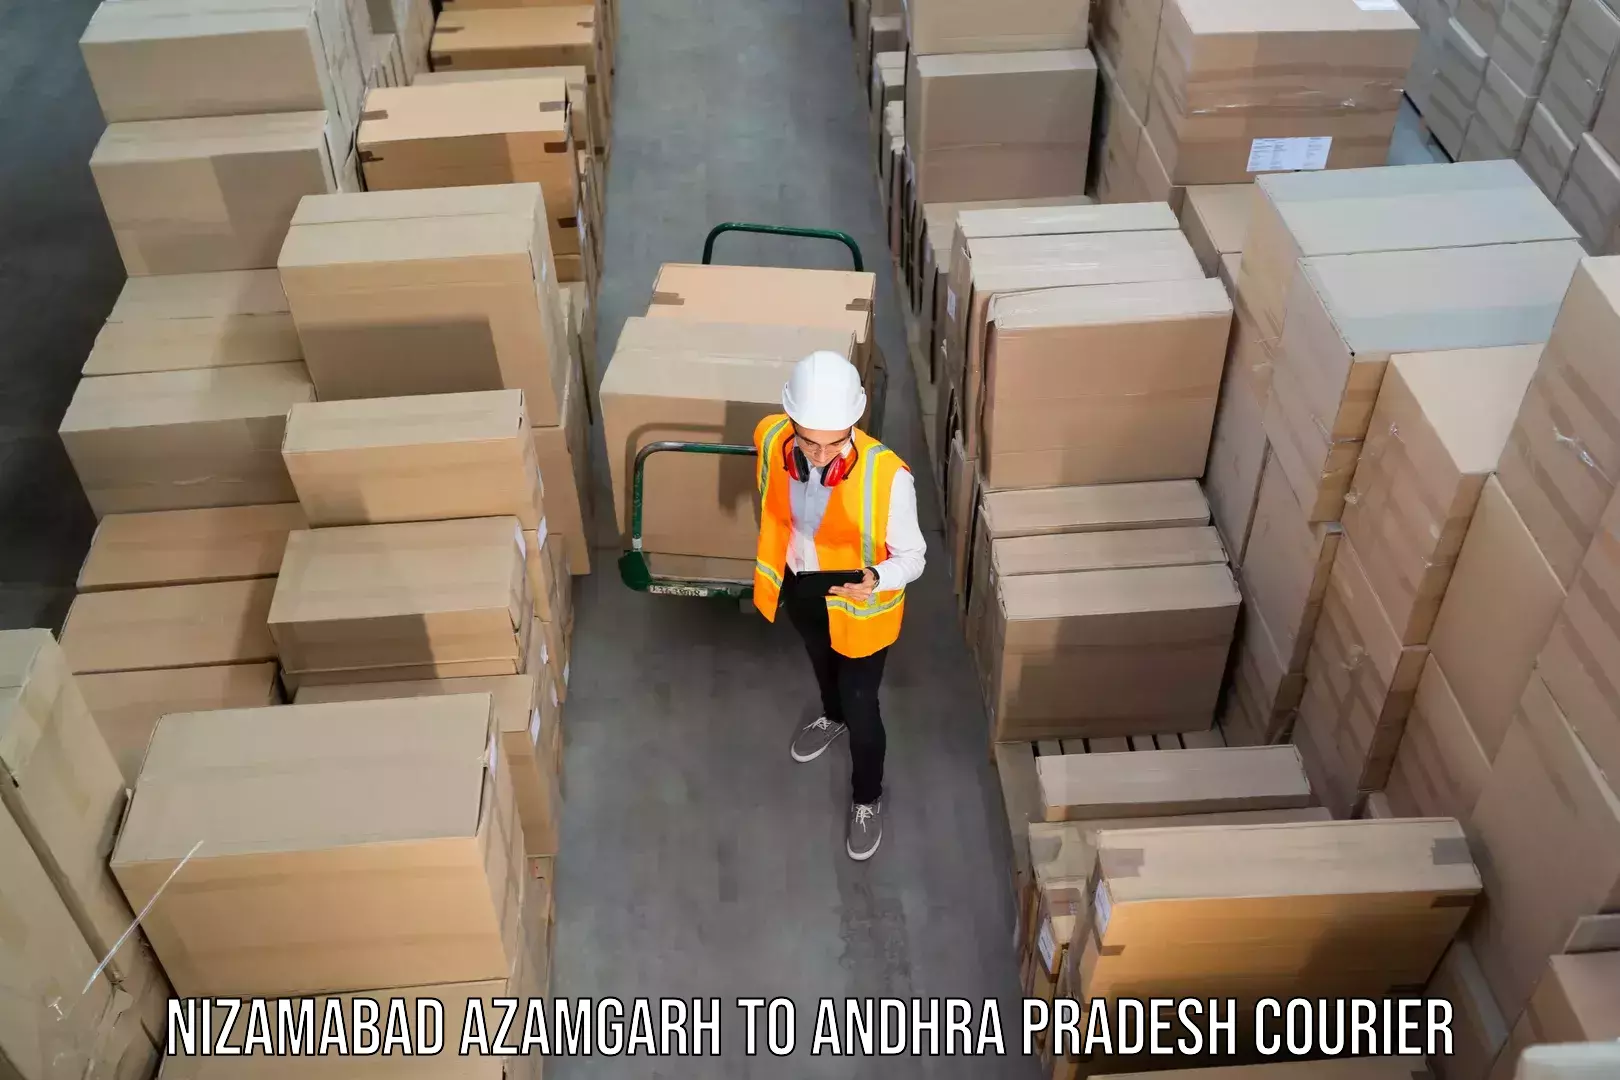 Next-generation courier services Nizamabad Azamgarh to Bobbili